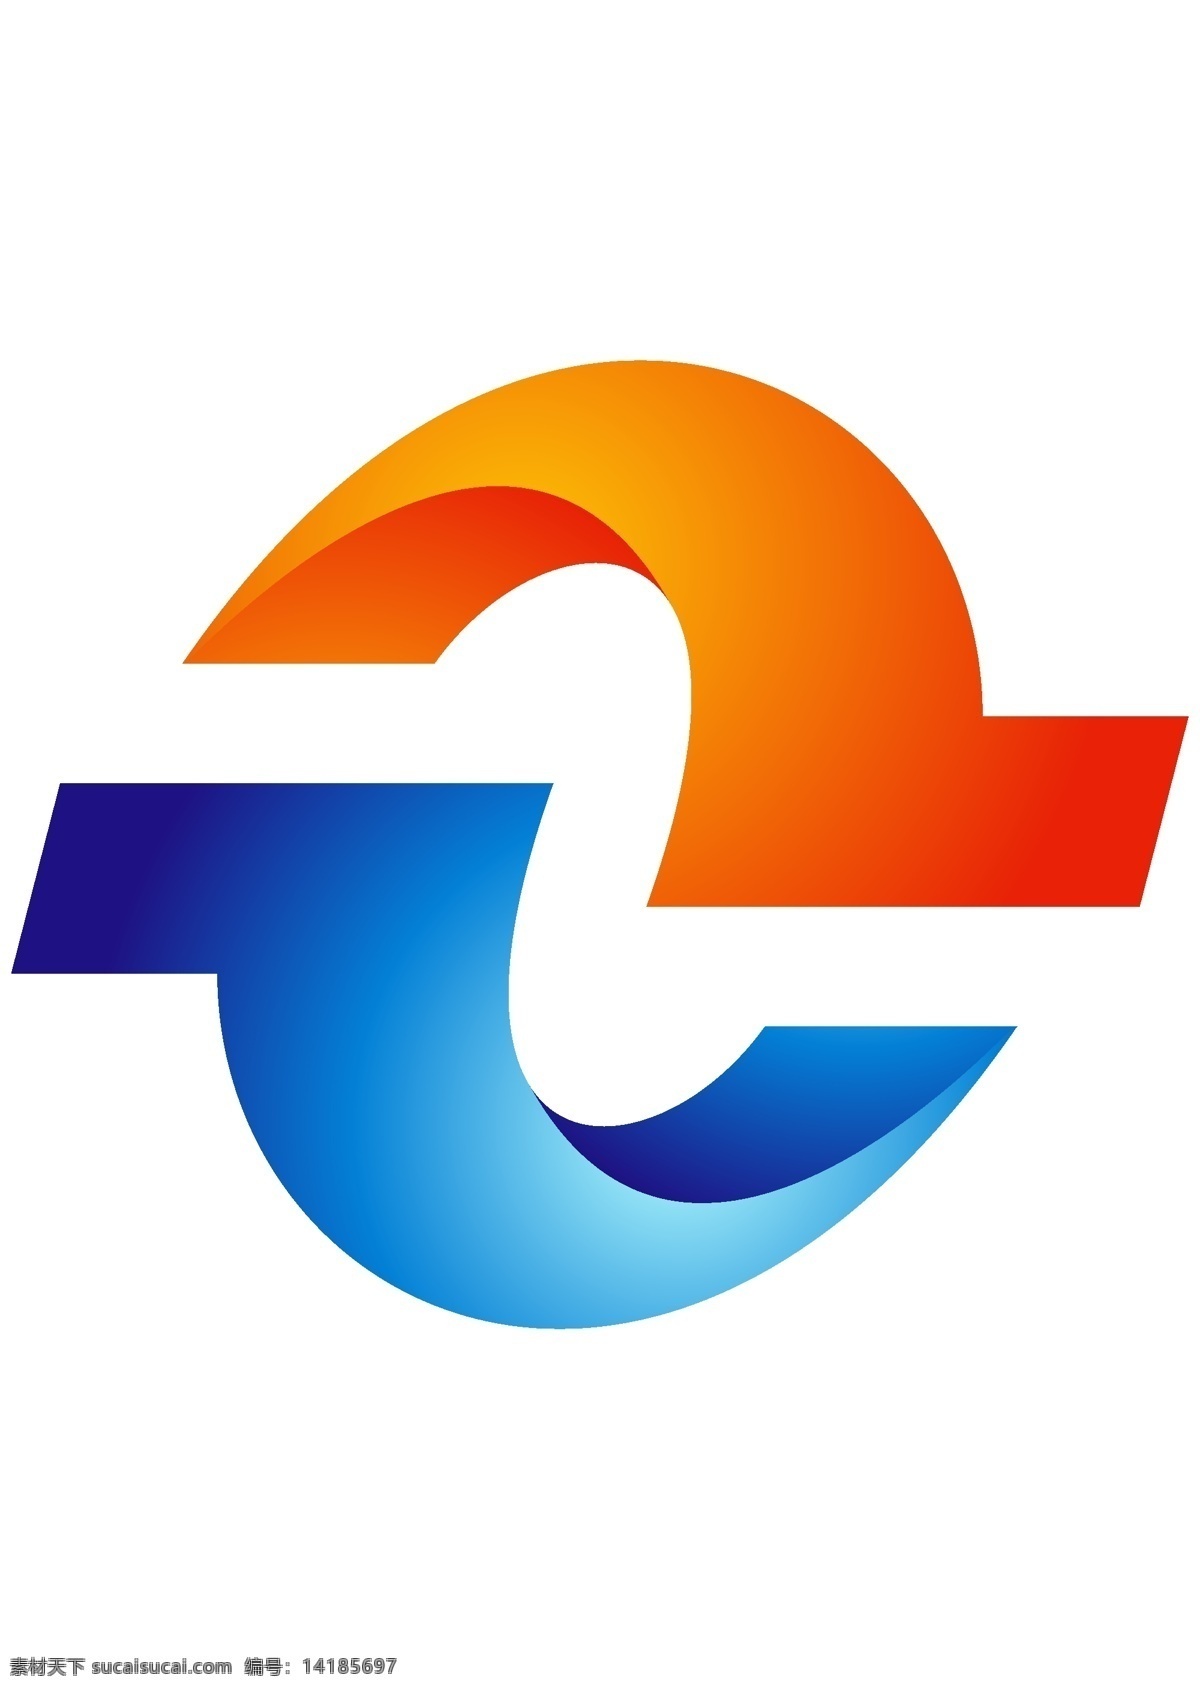 上下 对称 logo logo设计 橙蓝色 渐变 上下堆成 字母设计